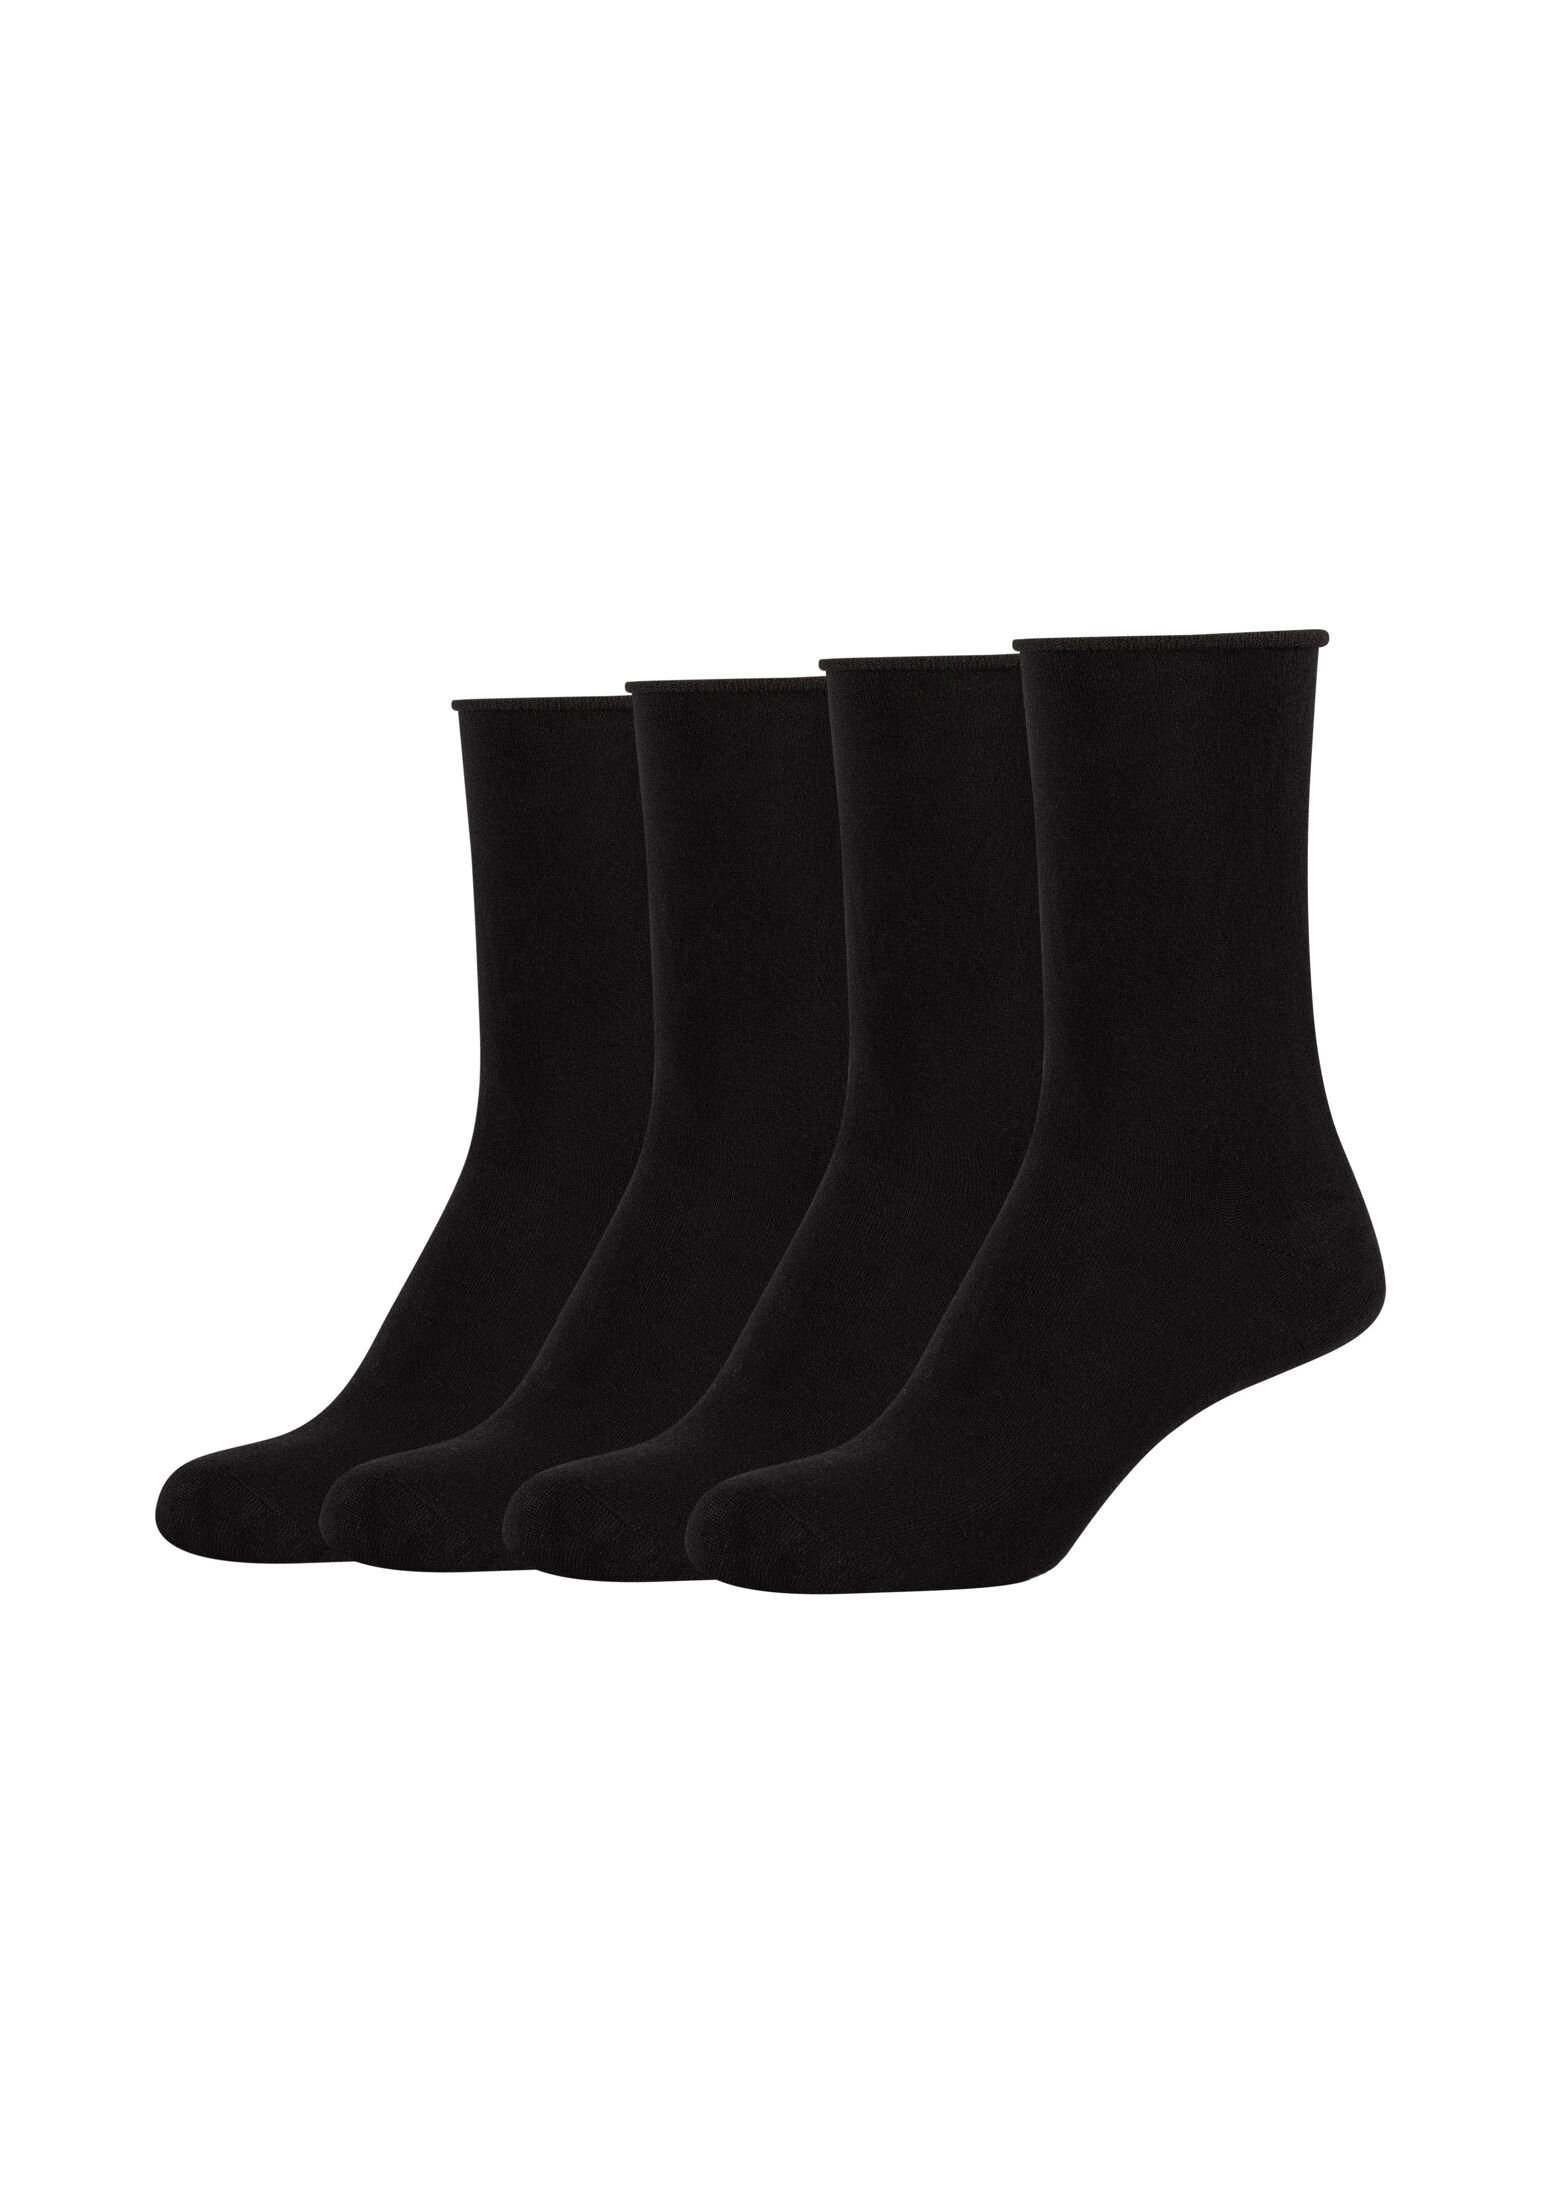 [Super willkommen] s.Oliver Socken Socken Pack 4er black